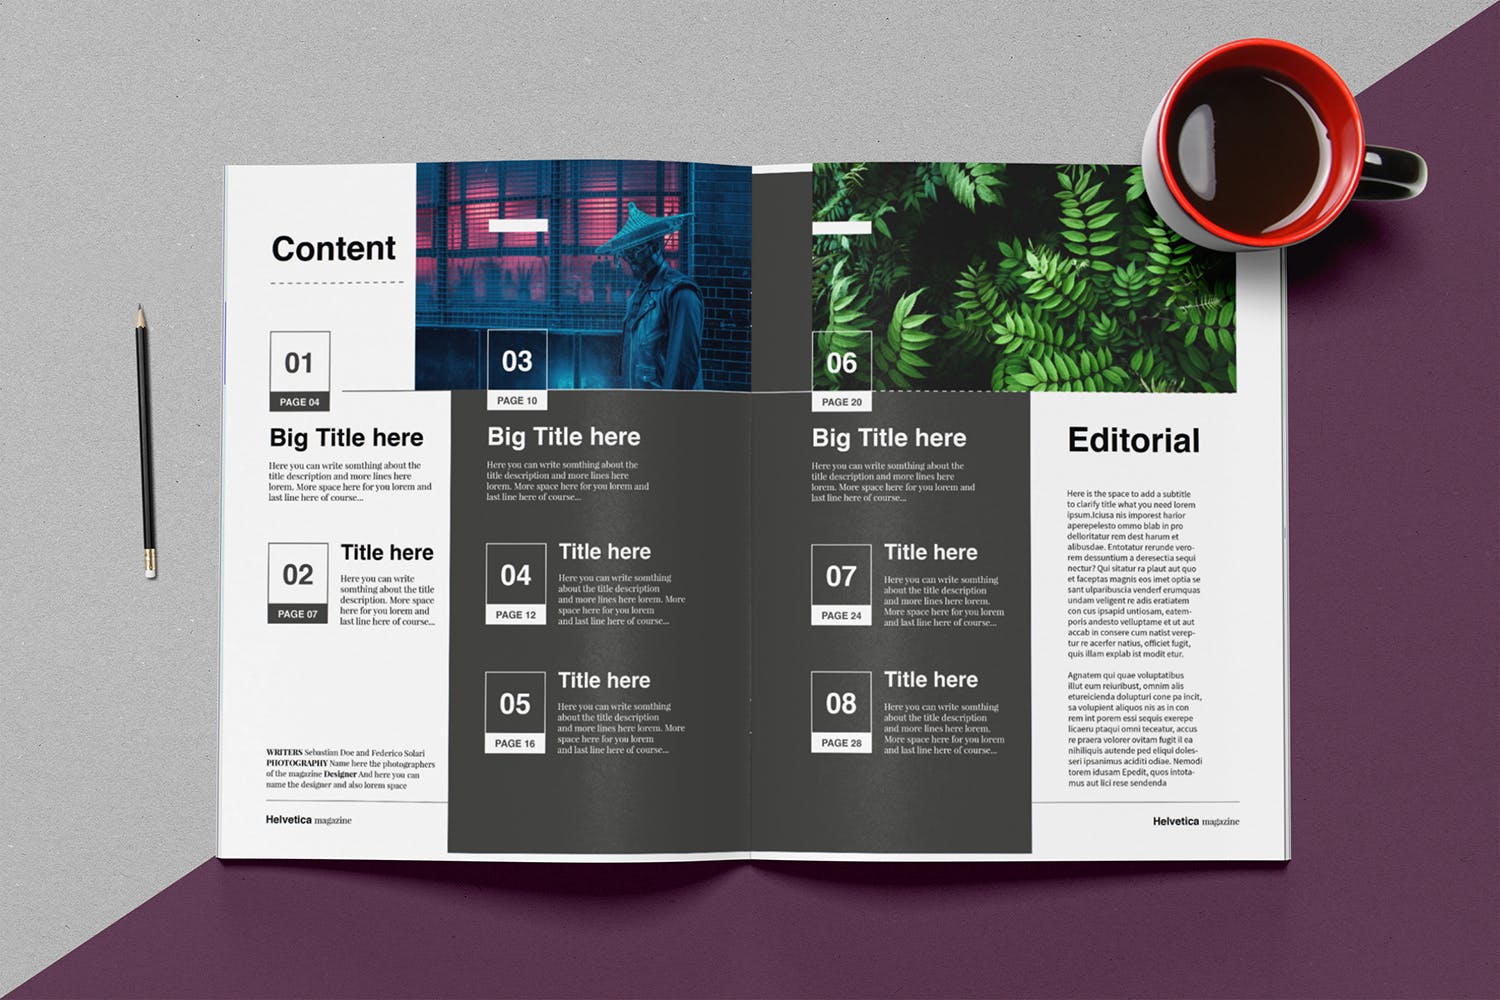 时尚行业产品评测杂志Indesign模板下载 Helvetica Magazine Indesign Template插图(2)